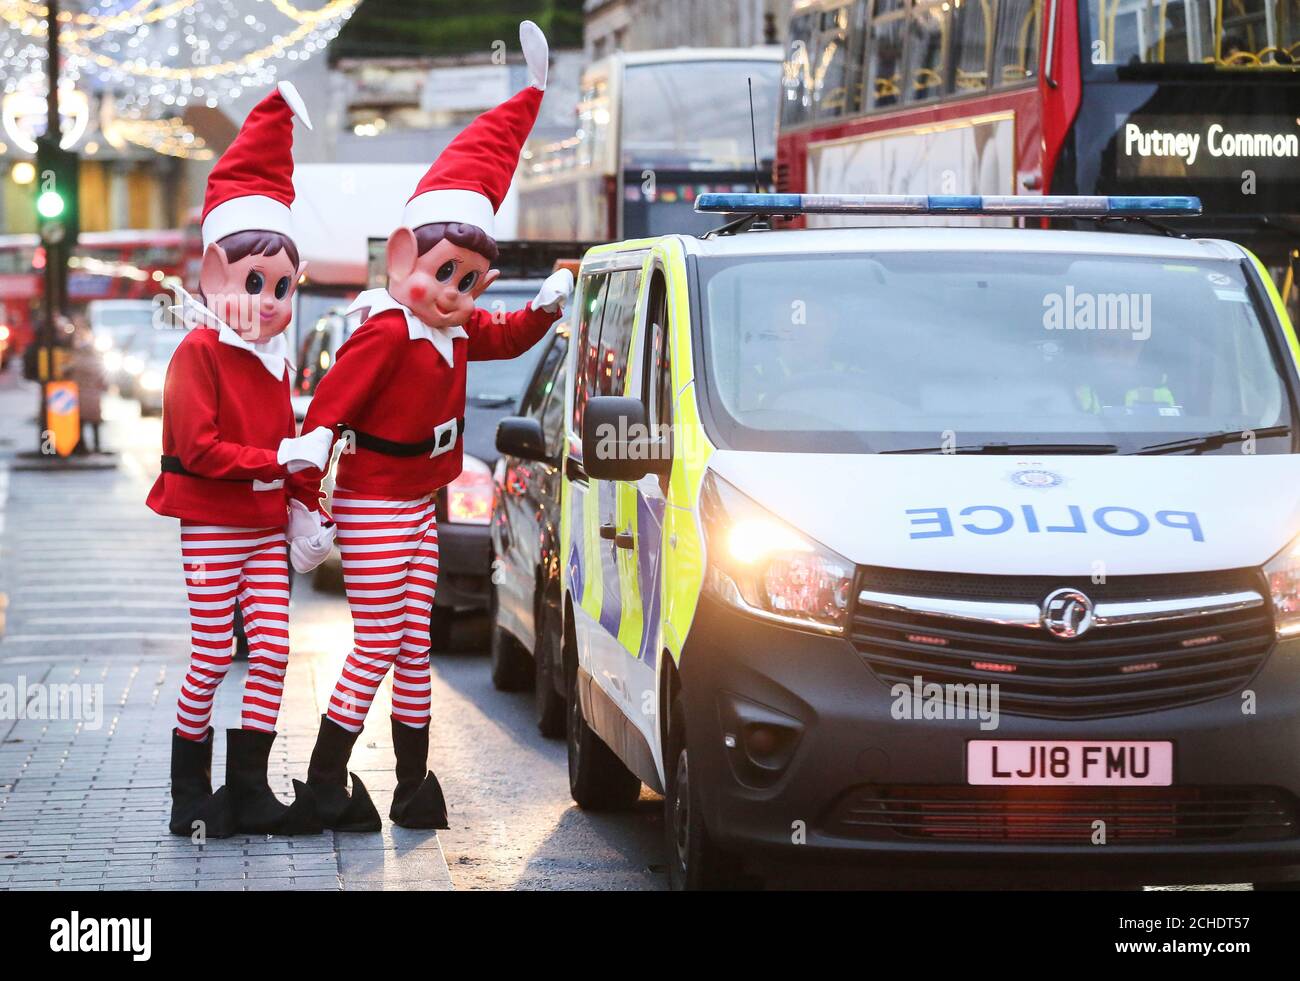 REDAKTIONELLE VERWENDUNG NUR Elfie und Elvie von der britischen Spielzeugmarke Elves, die sich im Vorfeld von Weihnachten schlecht benehmen, verursachen Unfug in der Oxford Street. Stockfoto